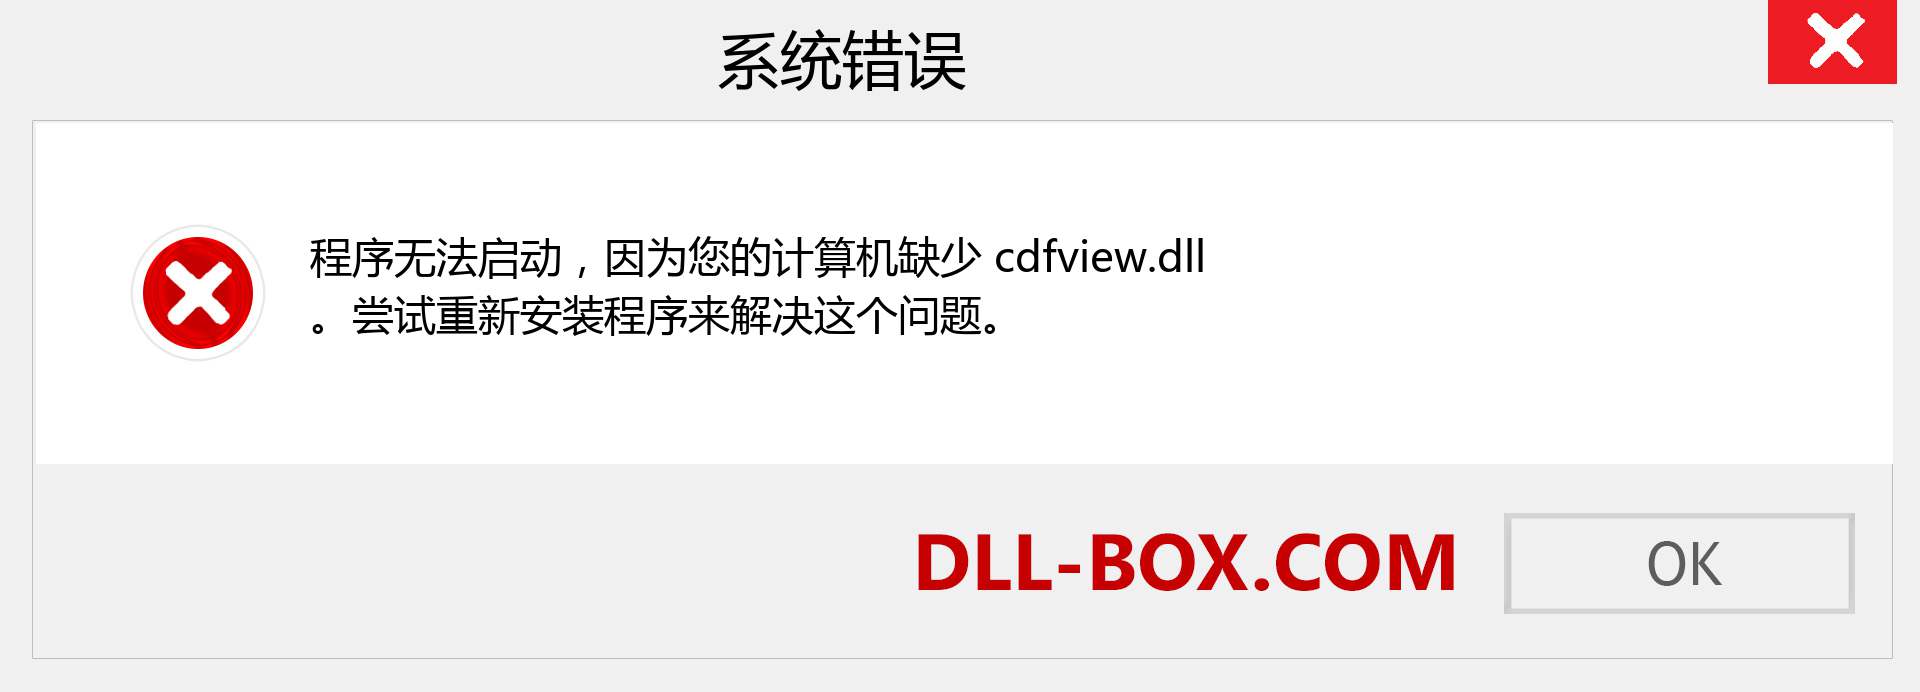 cdfview.dll 文件丢失？。 适用于 Windows 7、8、10 的下载 - 修复 Windows、照片、图像上的 cdfview dll 丢失错误